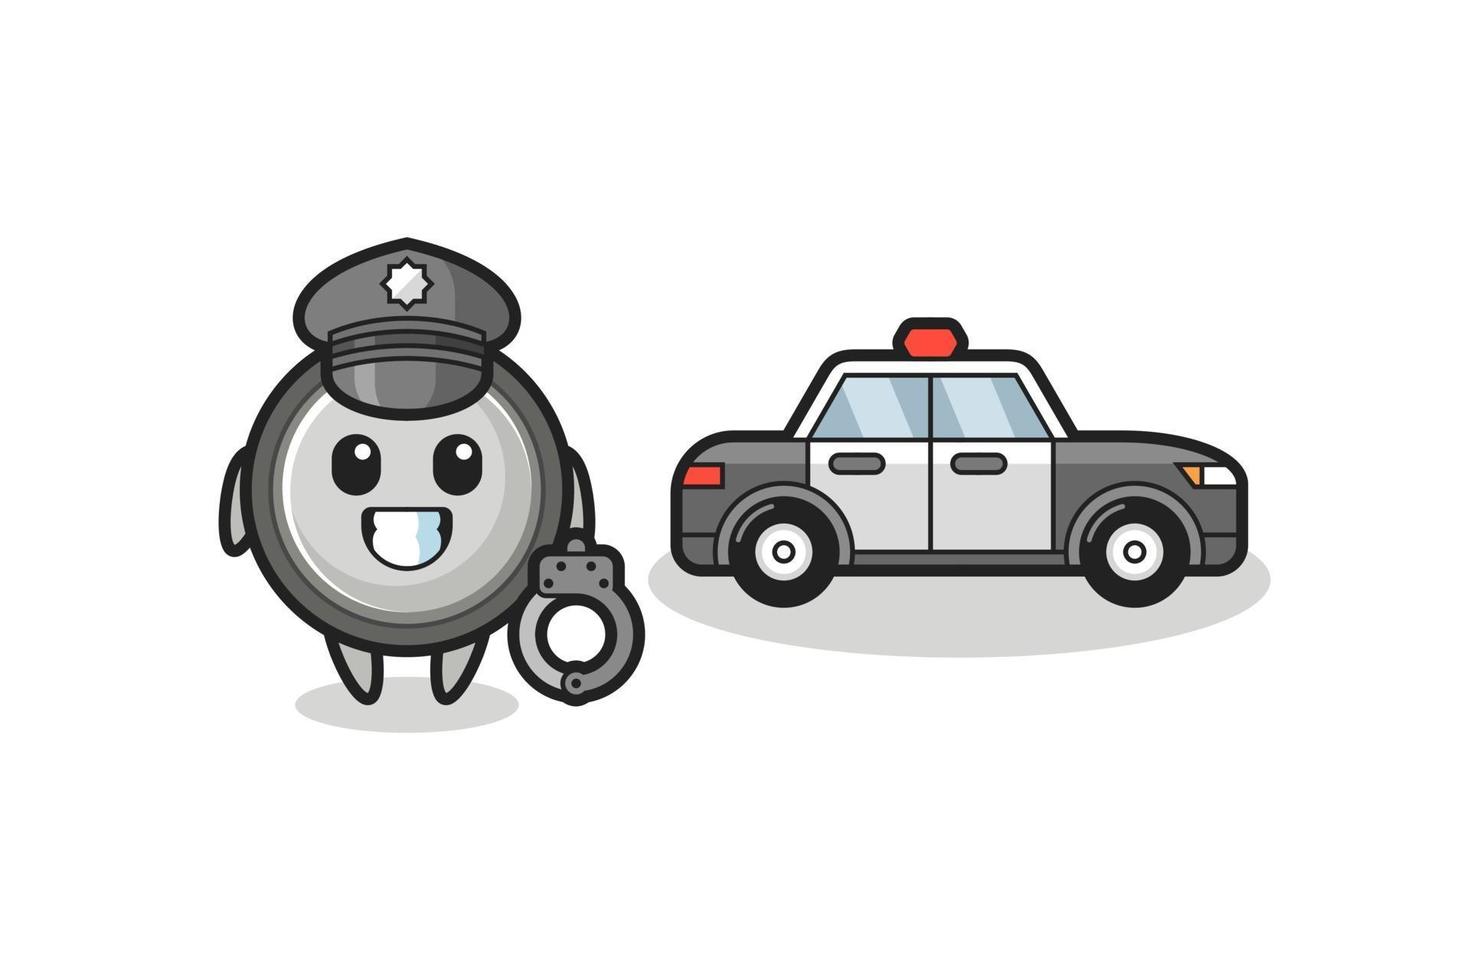 Cartoon mascot of button cell as a police vector